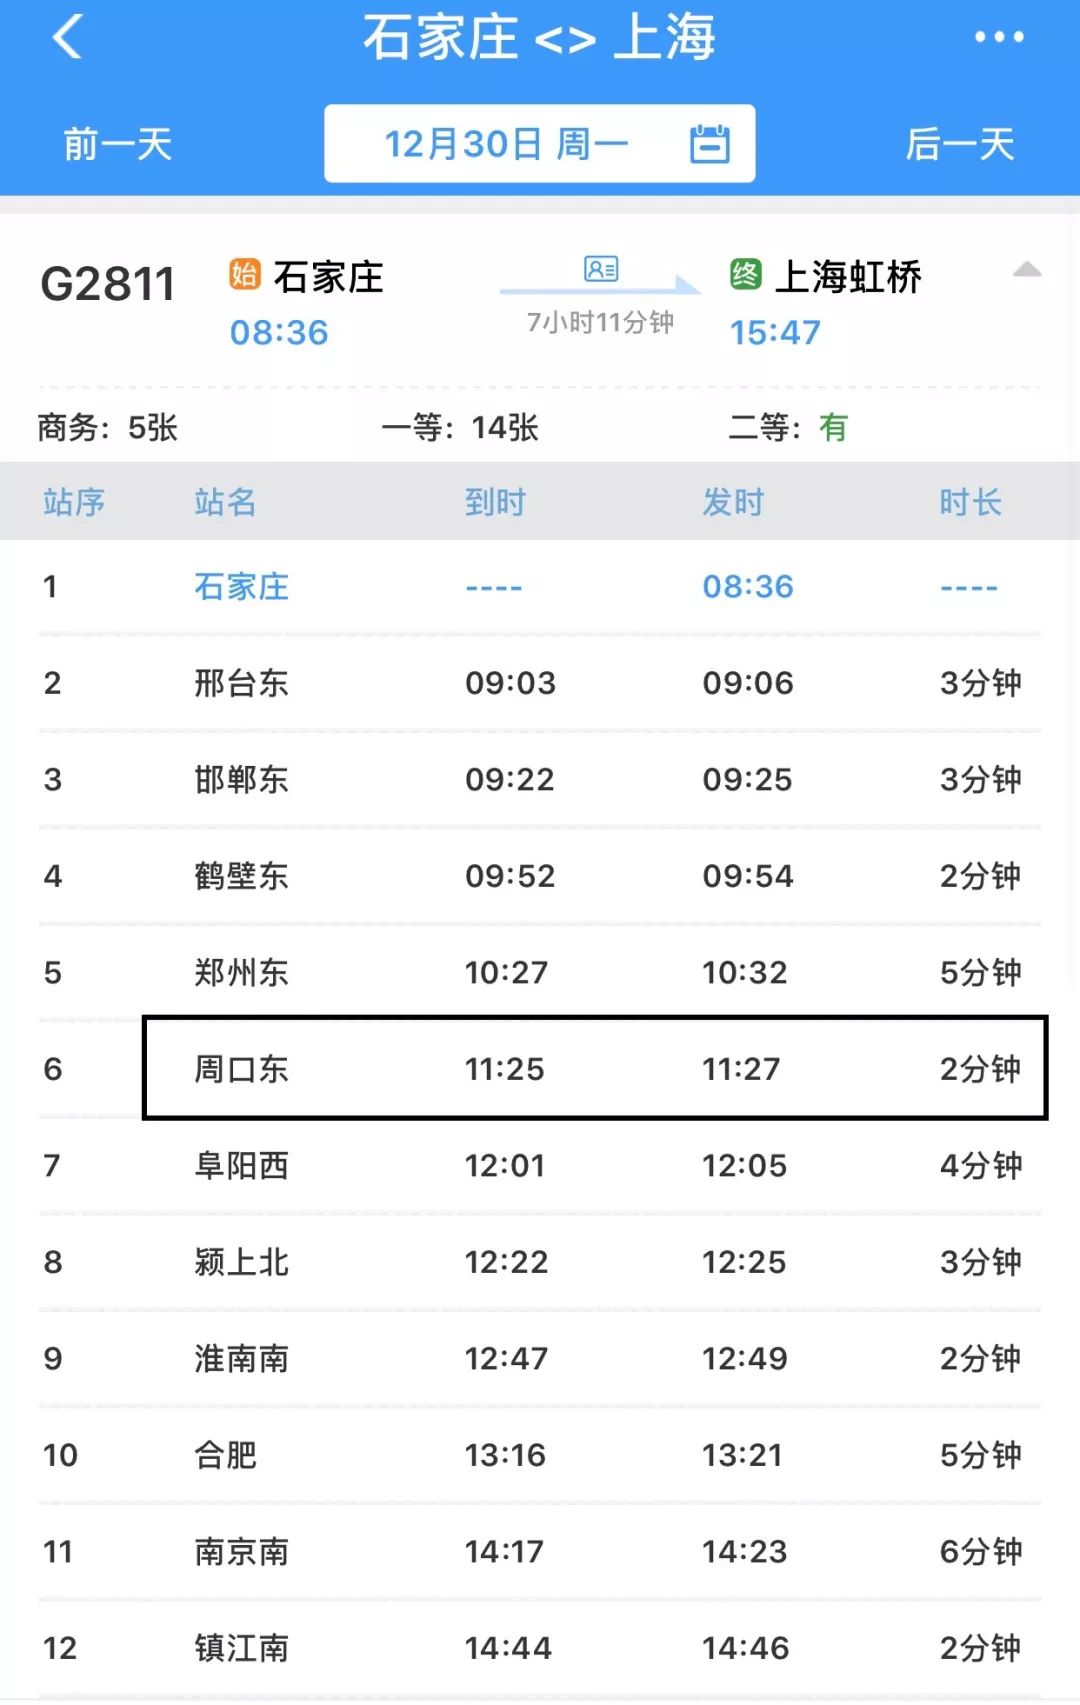 列车,周口上海、南京、杭州…高铁时刻表